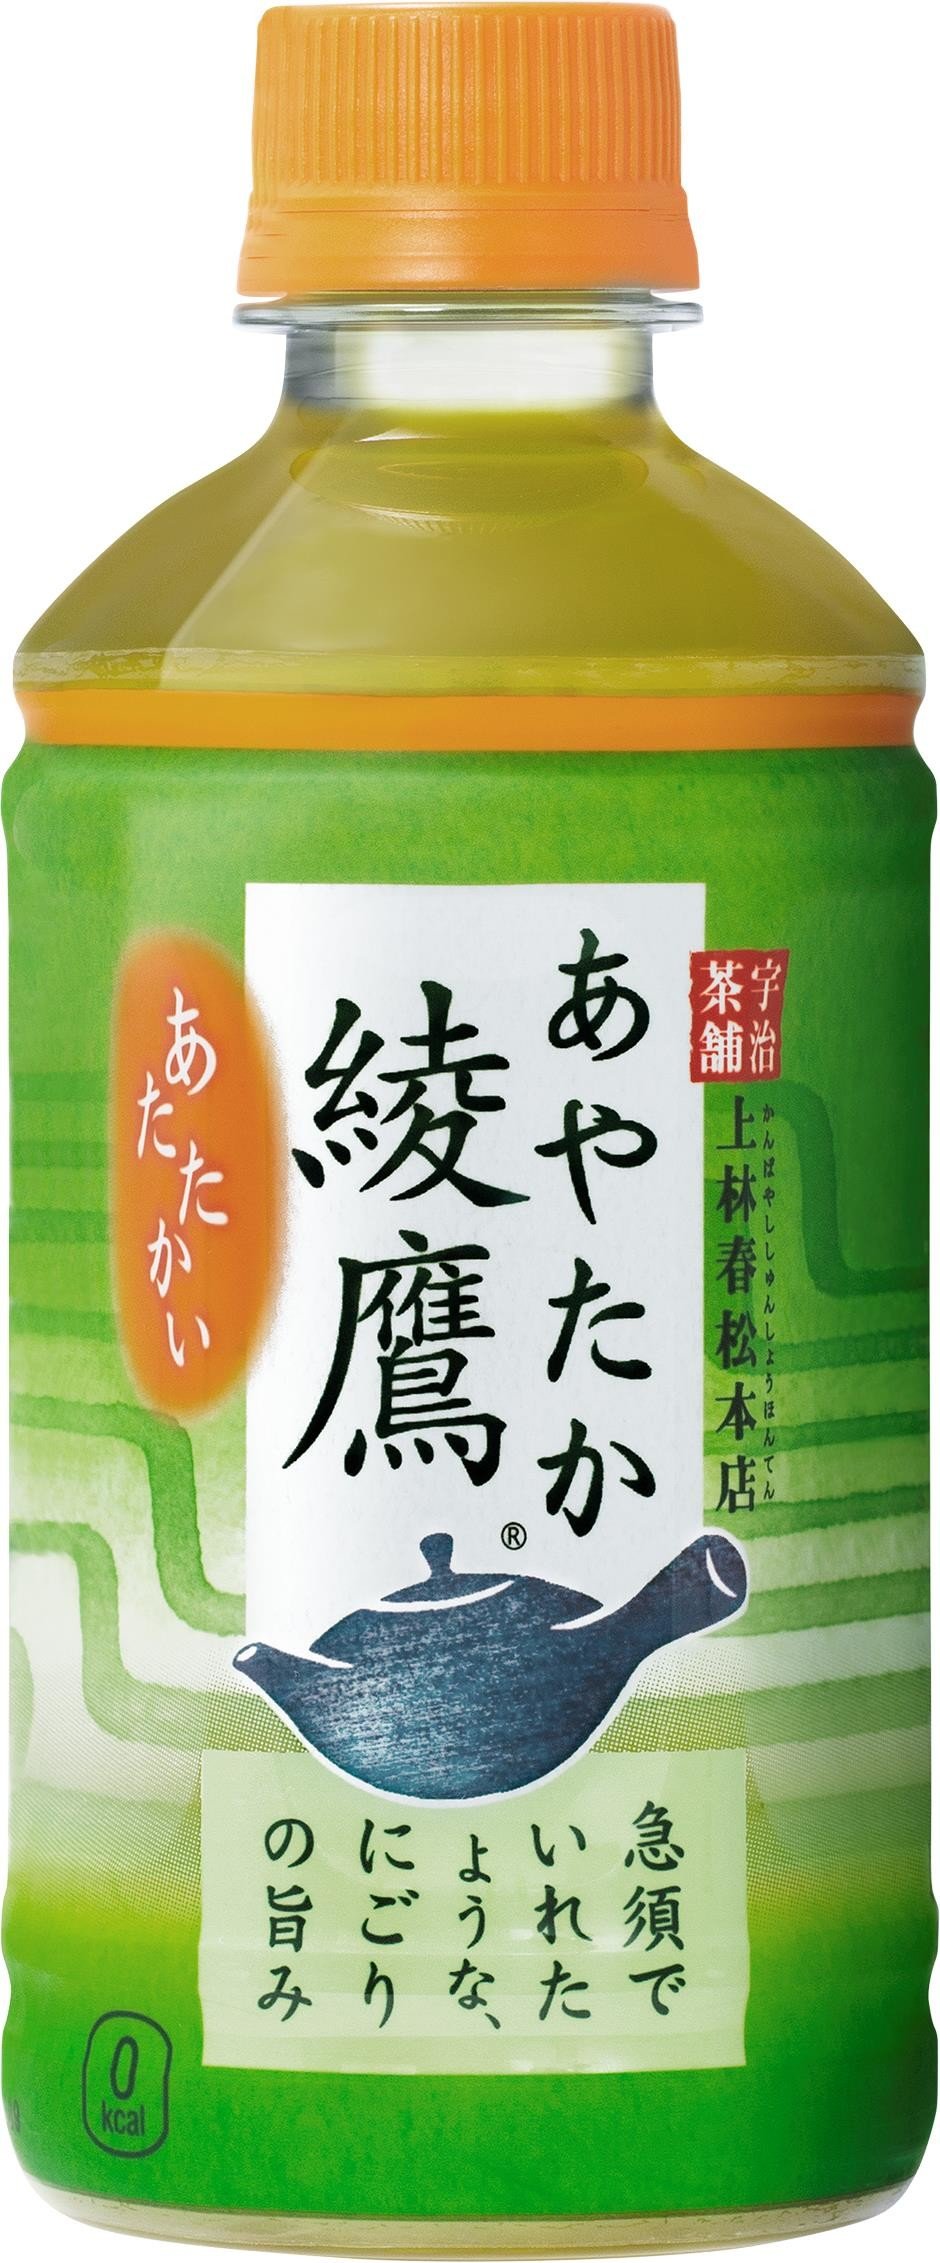 急須でいれた緑茶の味わいは「ほっとする」　静岡県立大が日本人の意識調査